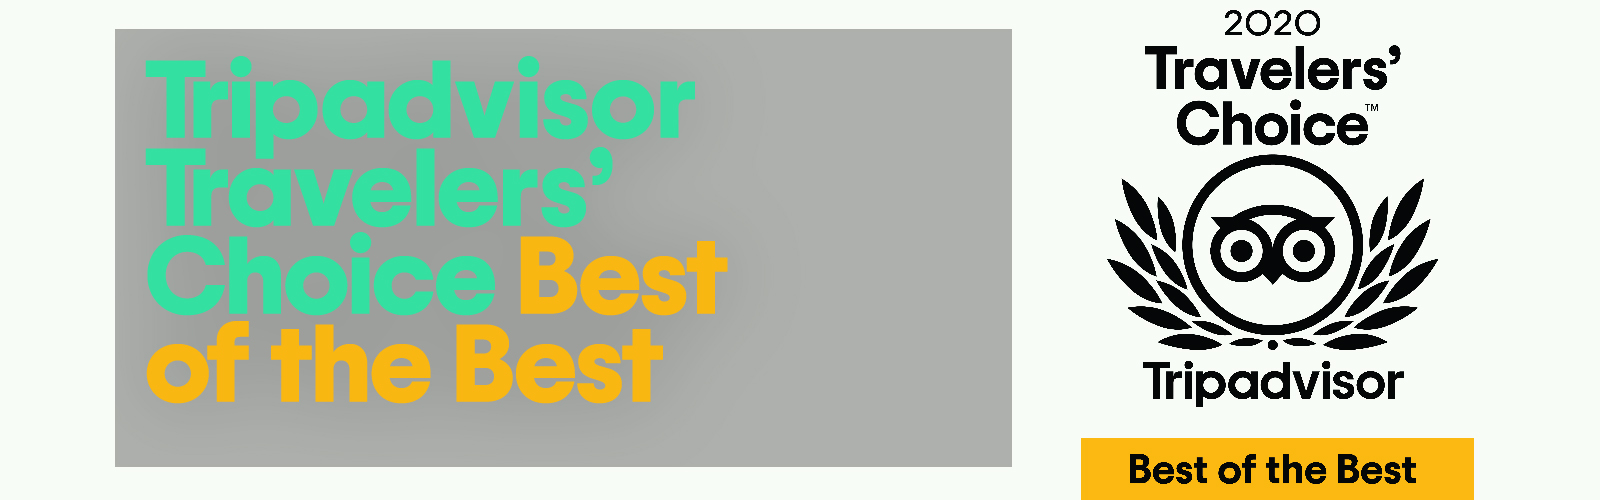 Prémio Best of the best 2020, atribuído ao Mosteiro de Tibães pelo site Trip Advisor